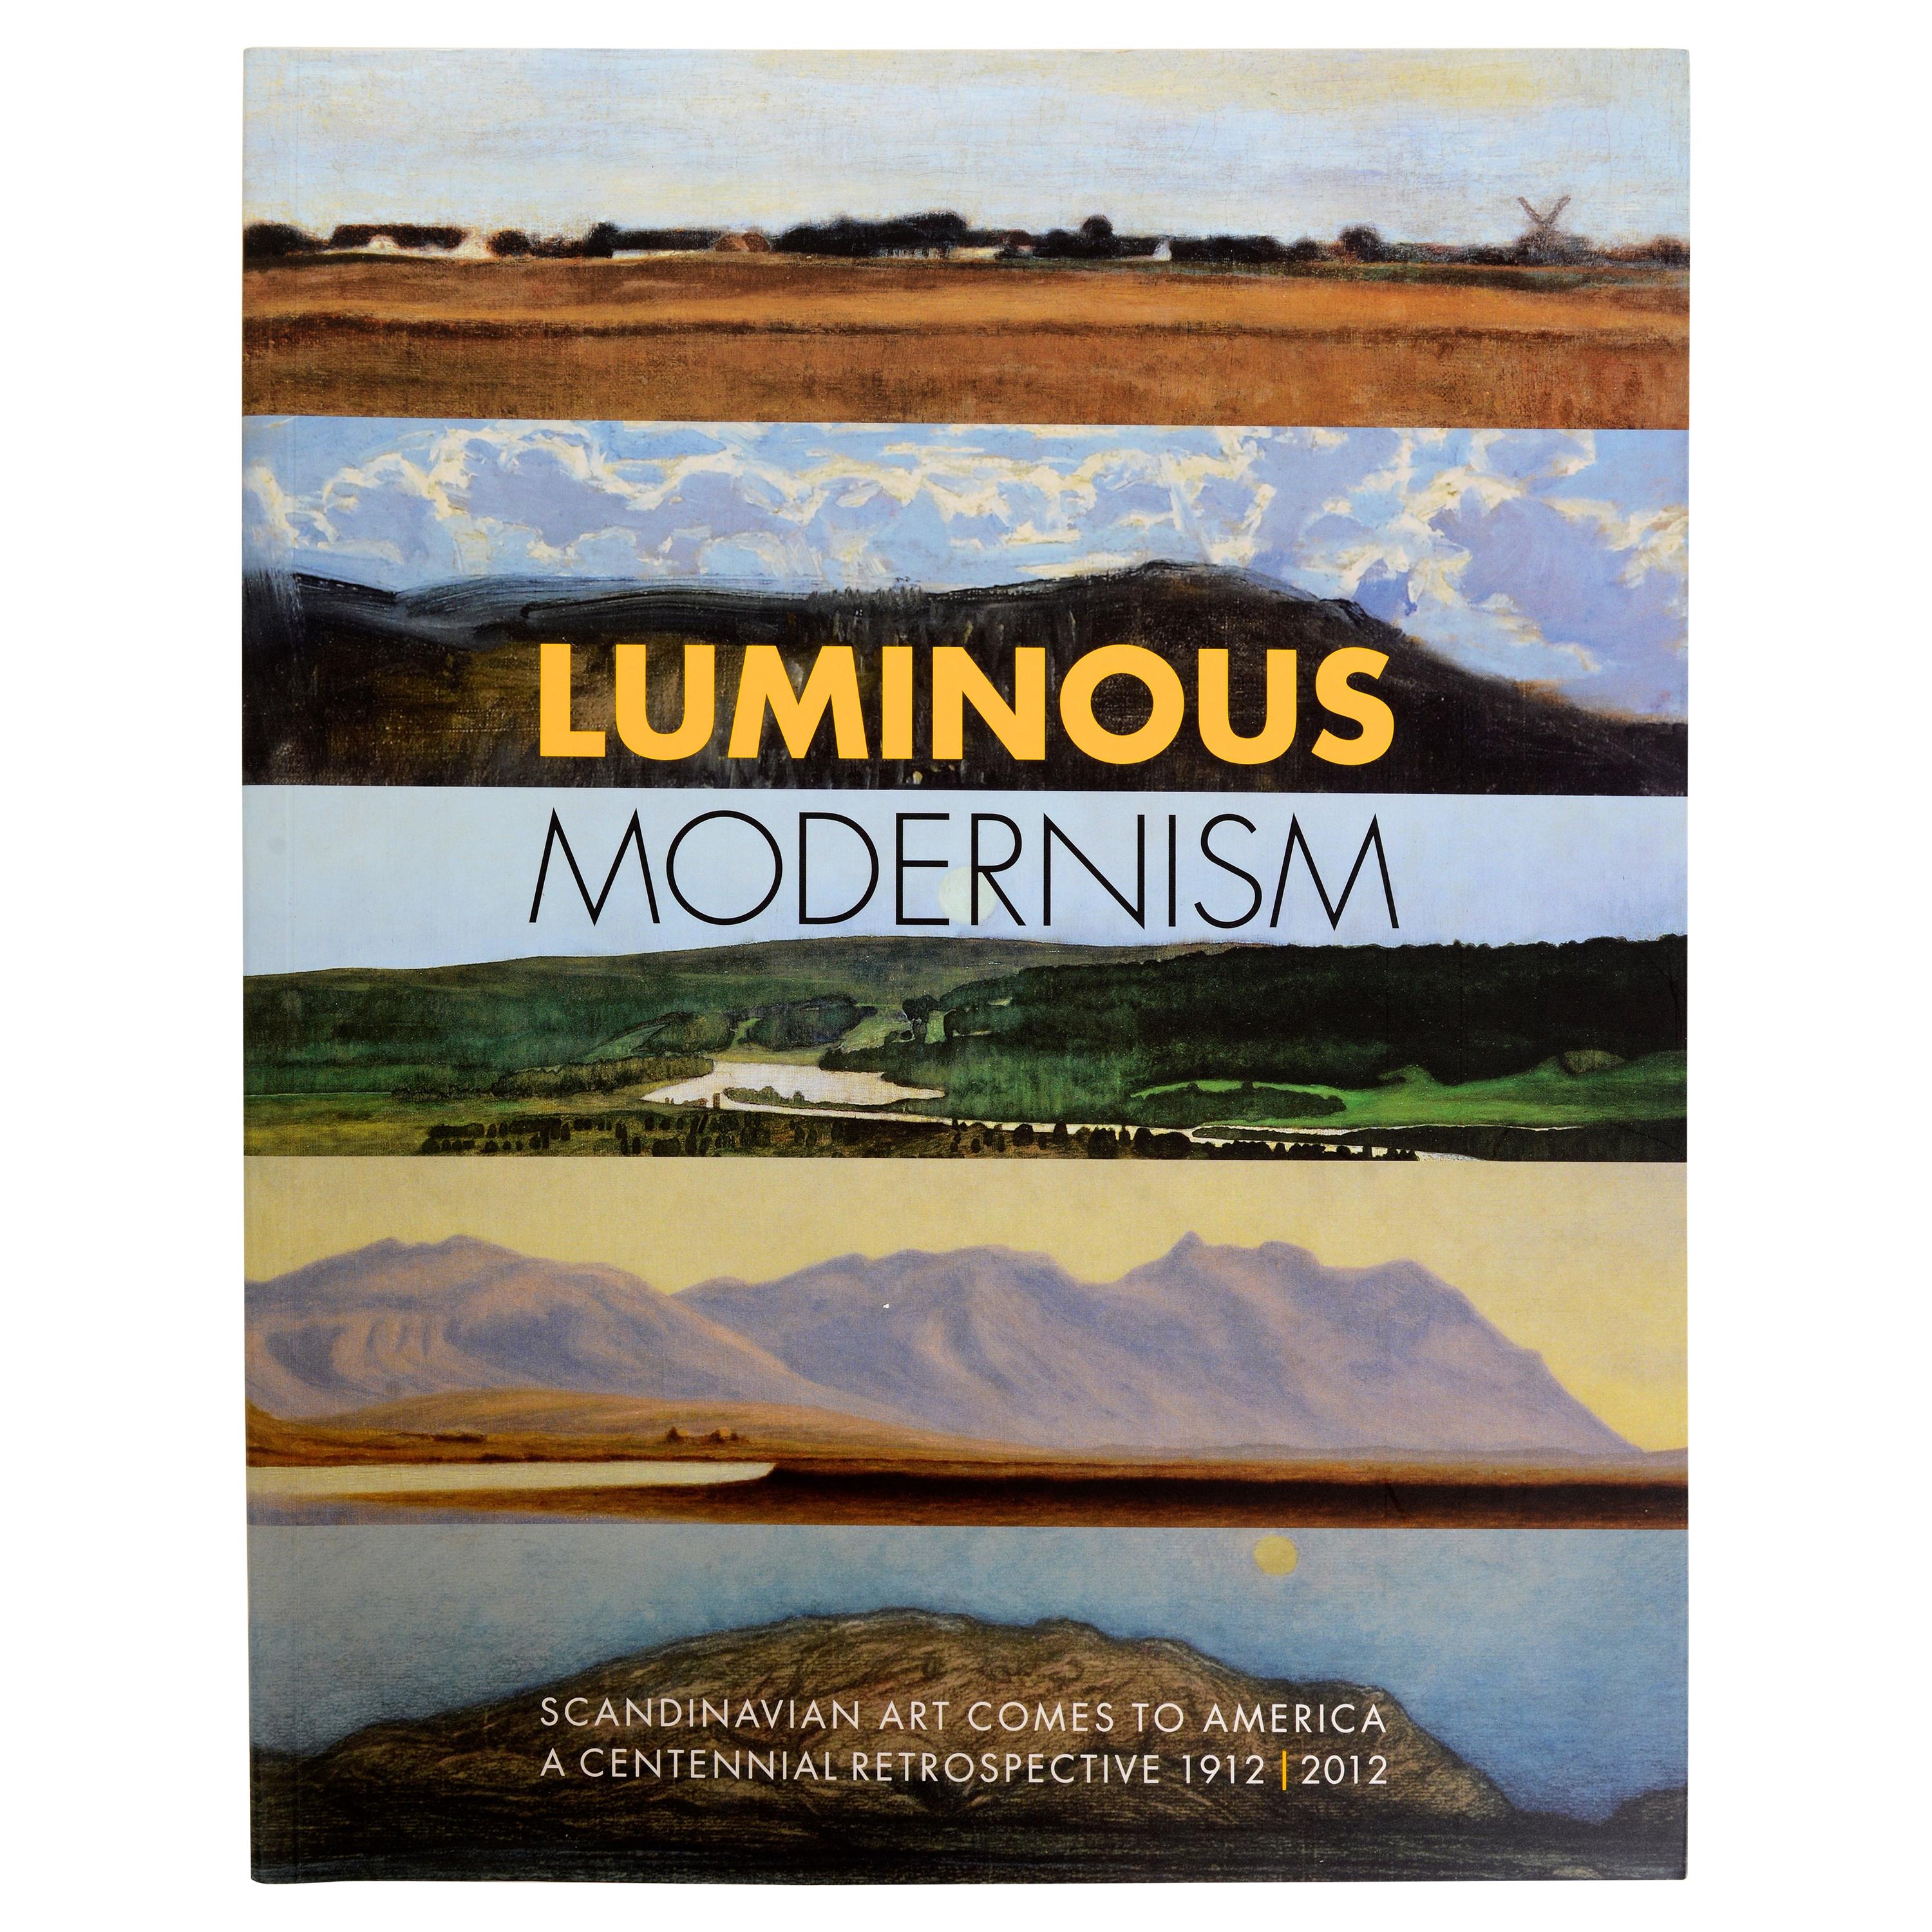 Le modernisme lumineux de l'art scandinave vient en Amérique : une rétrospective 1912-2012